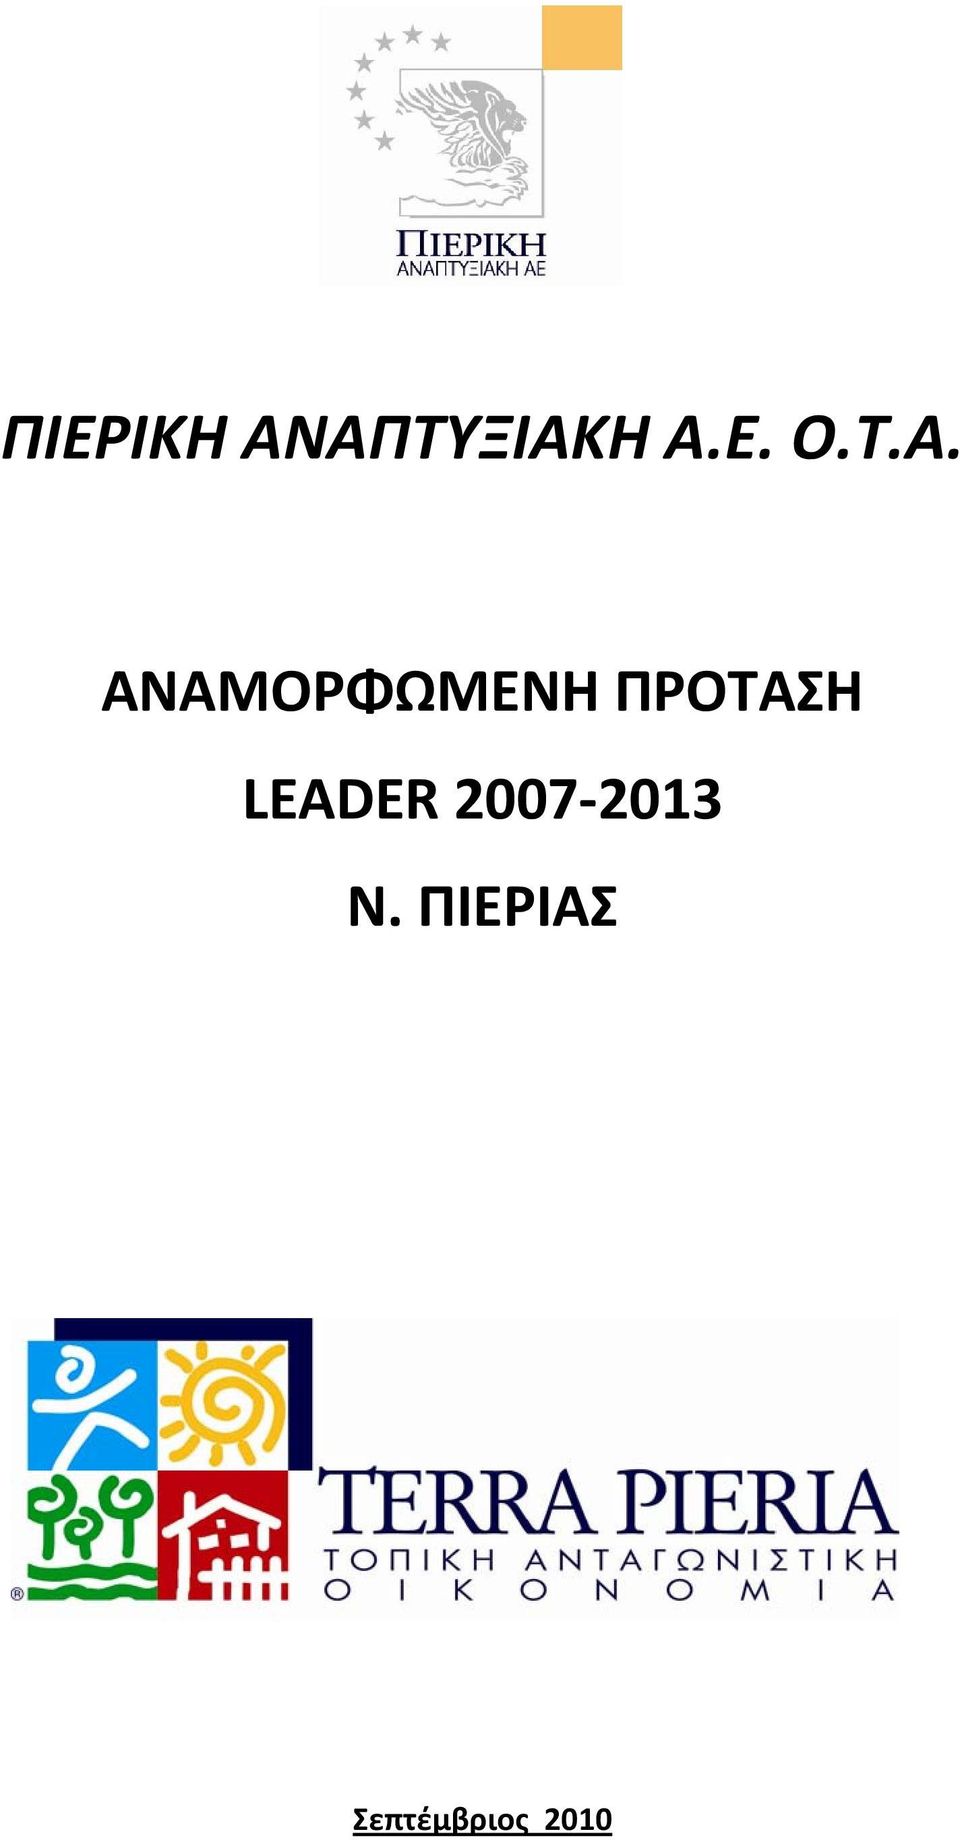 ΠΡΟΤΑΣΗ LEADER 2007 2013